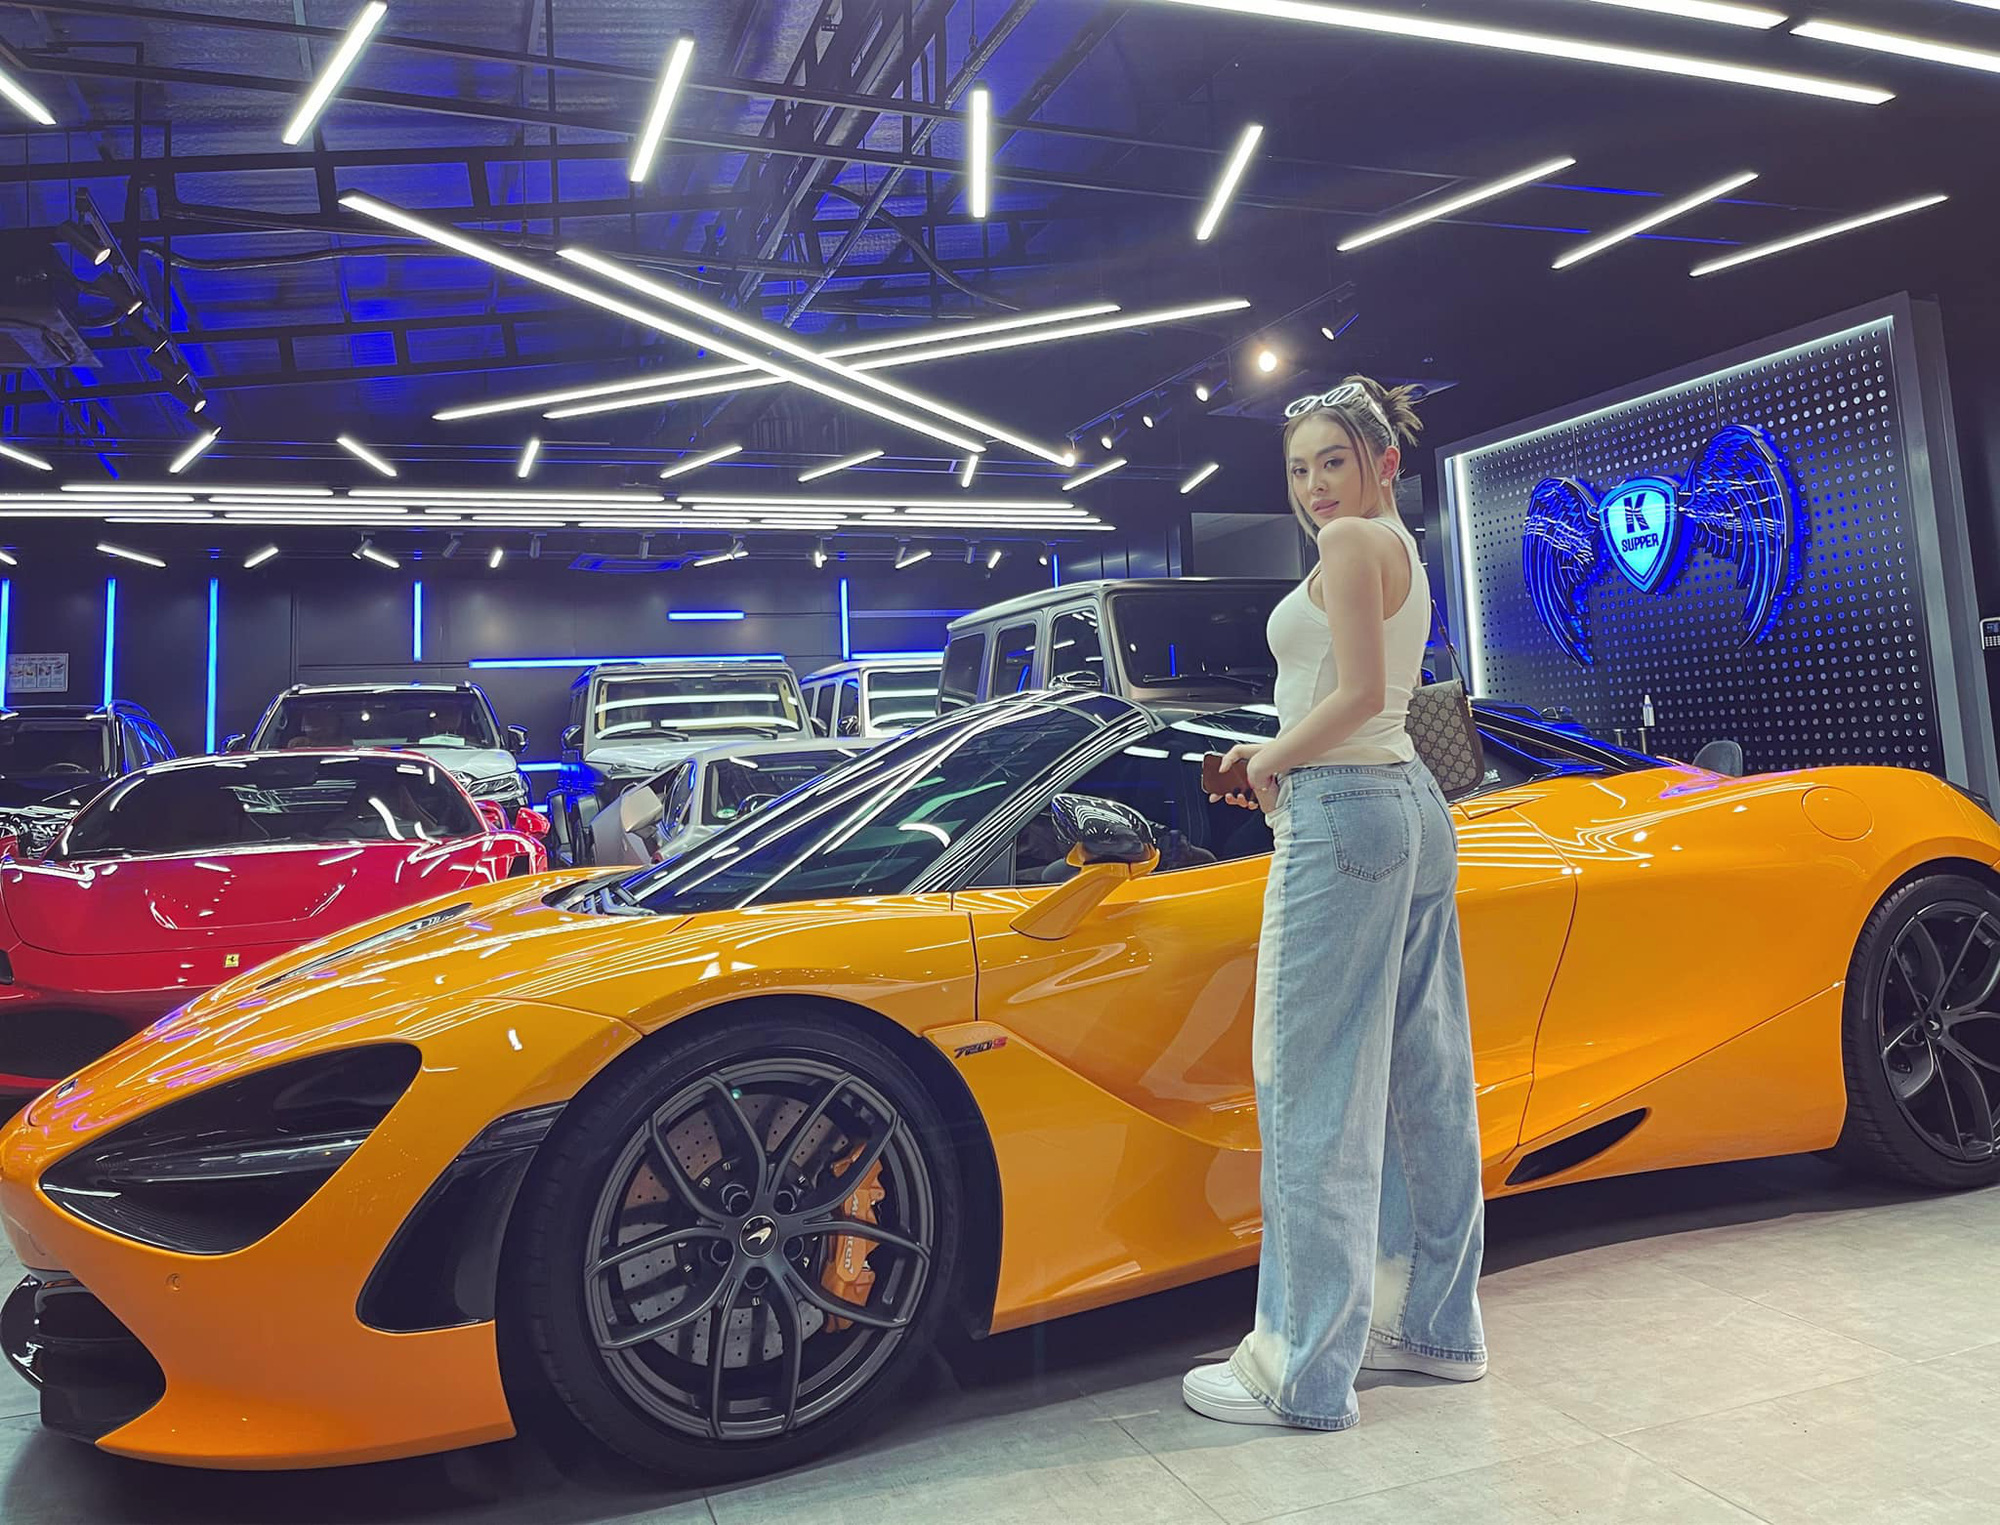 Hot girl 9X bán quần áo tại TP. HCM chốt McLaren 720S Spider triệu đô chỉ sau 30 phút, ghép cặp với Mercedes-AMG G 63 độ Hermes - Ảnh 4.